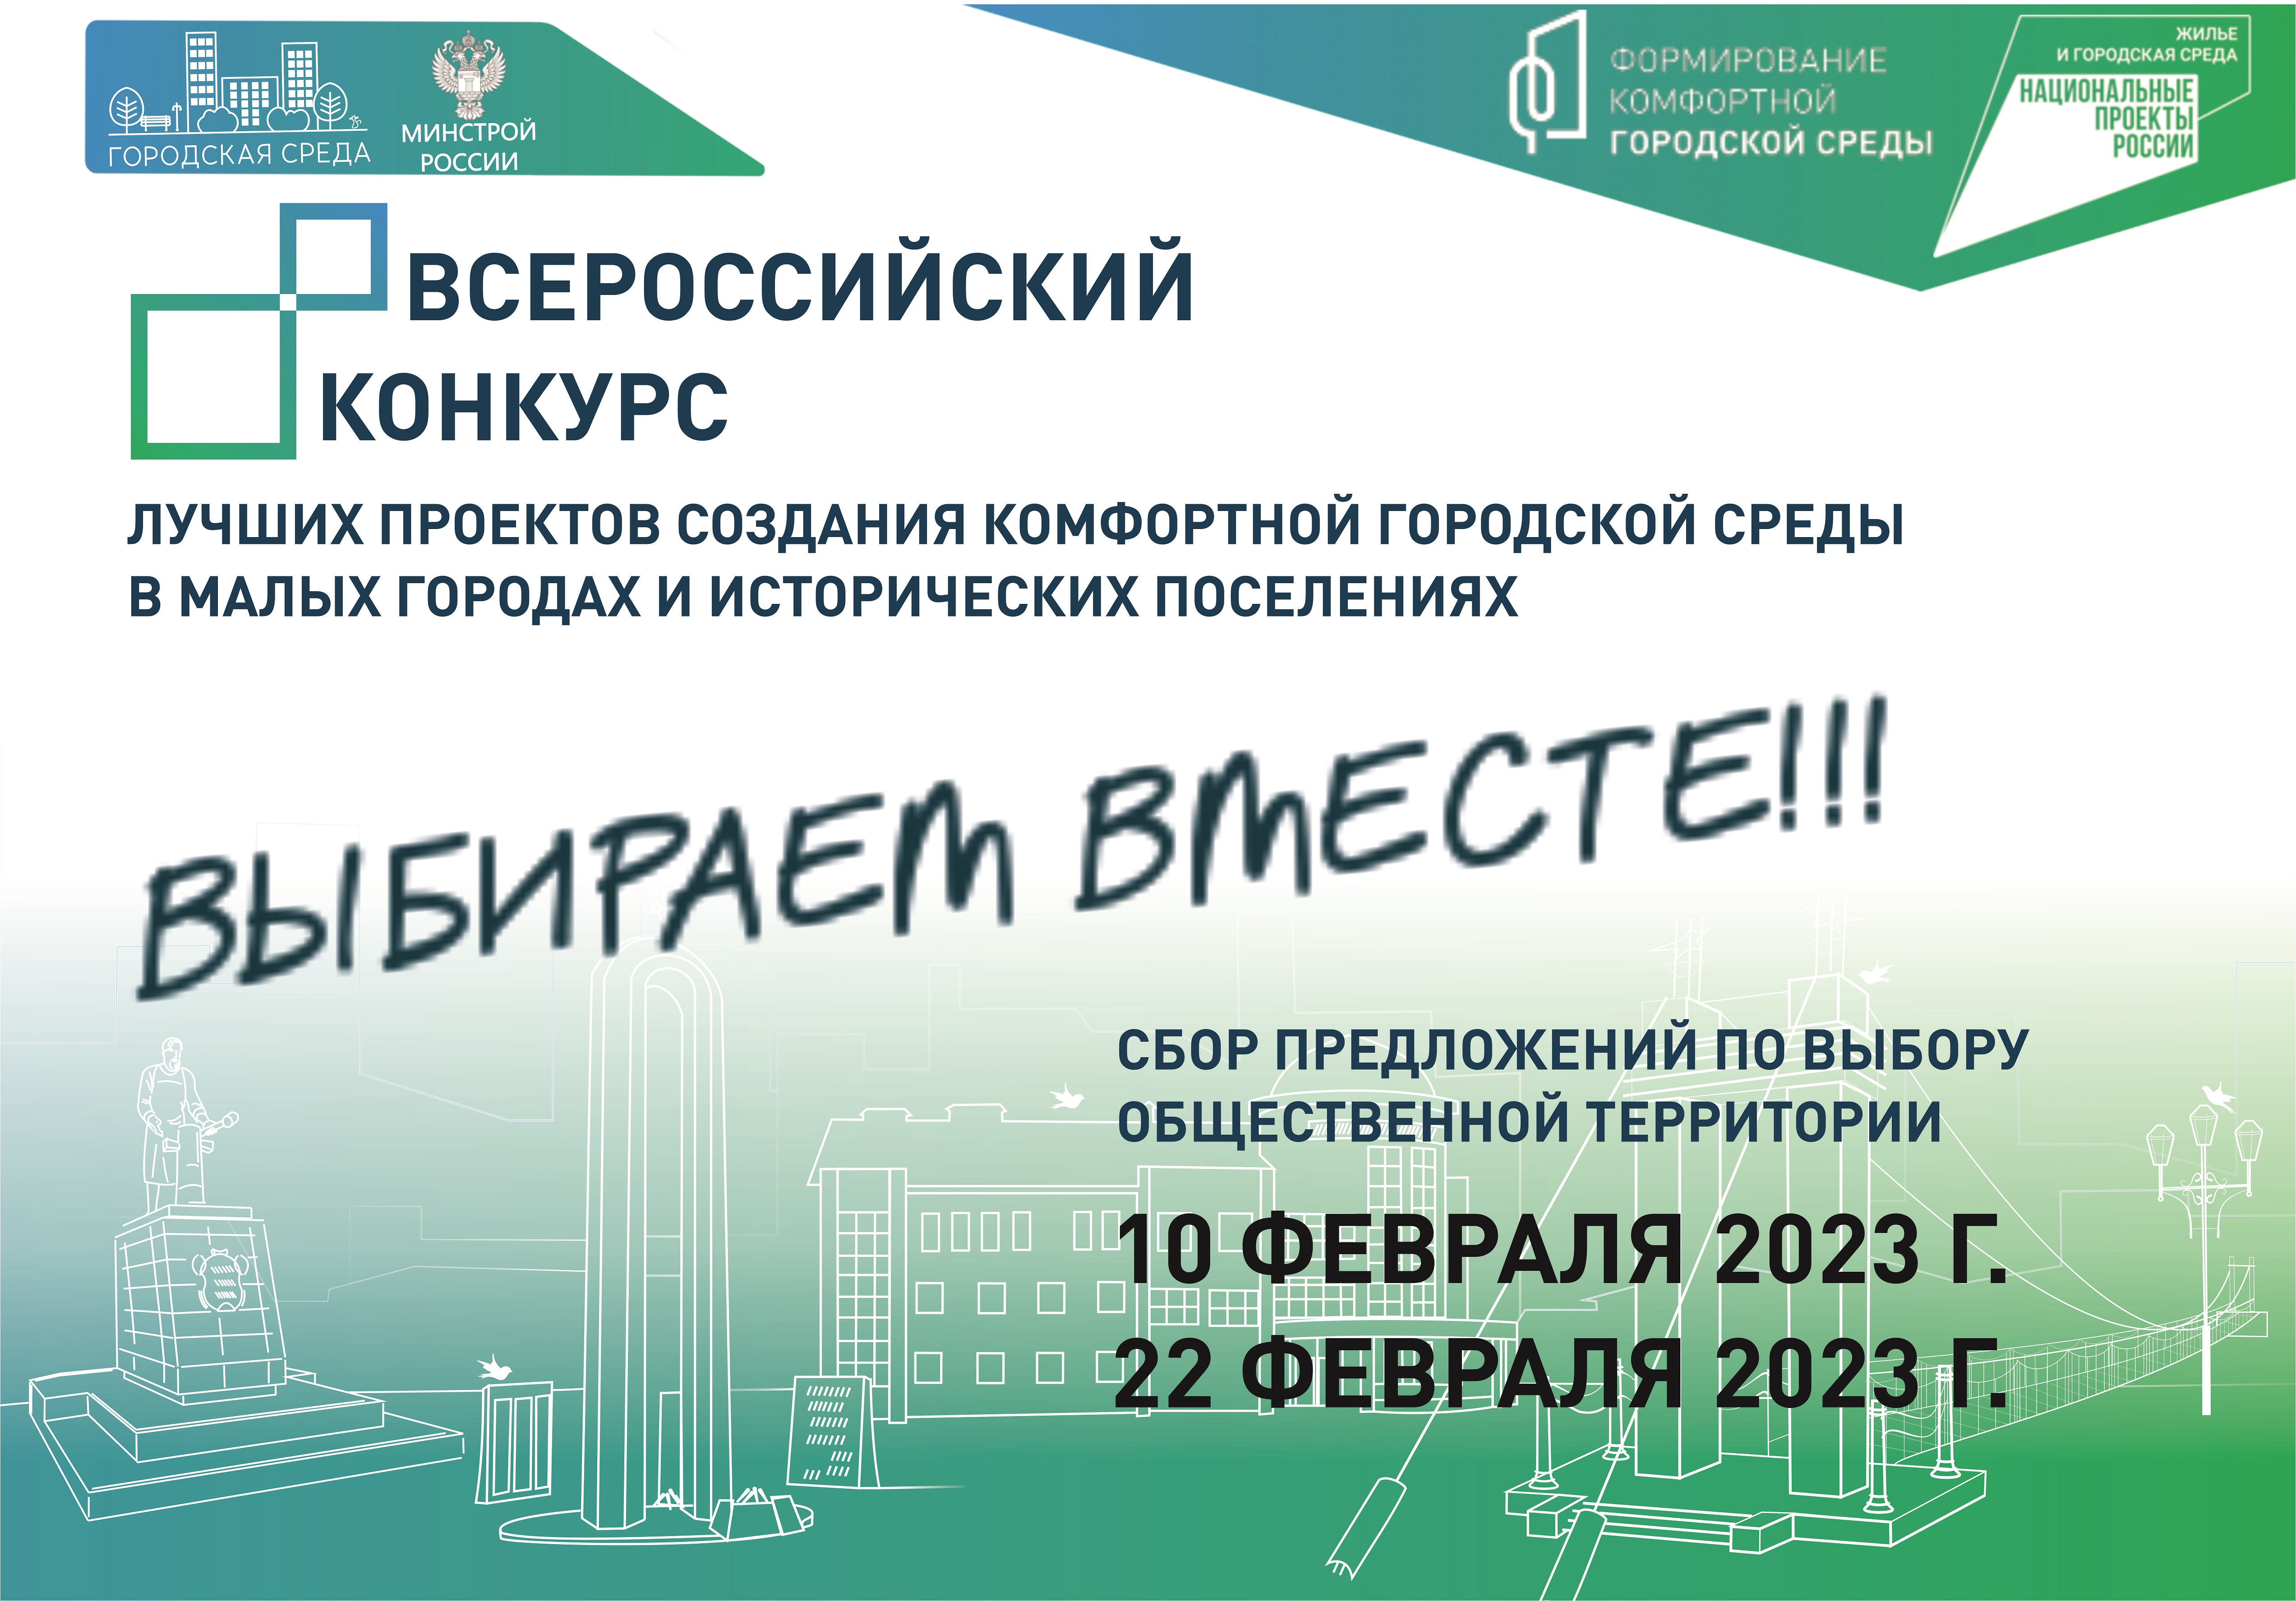 Уважаемые жители Алексеевского городского округа, предлагаем вам принять участие в опросе по выбору общественной территории для участия во Всероссийском конкурсе лучших проектов создания комфортной городской среды в 2023 году.